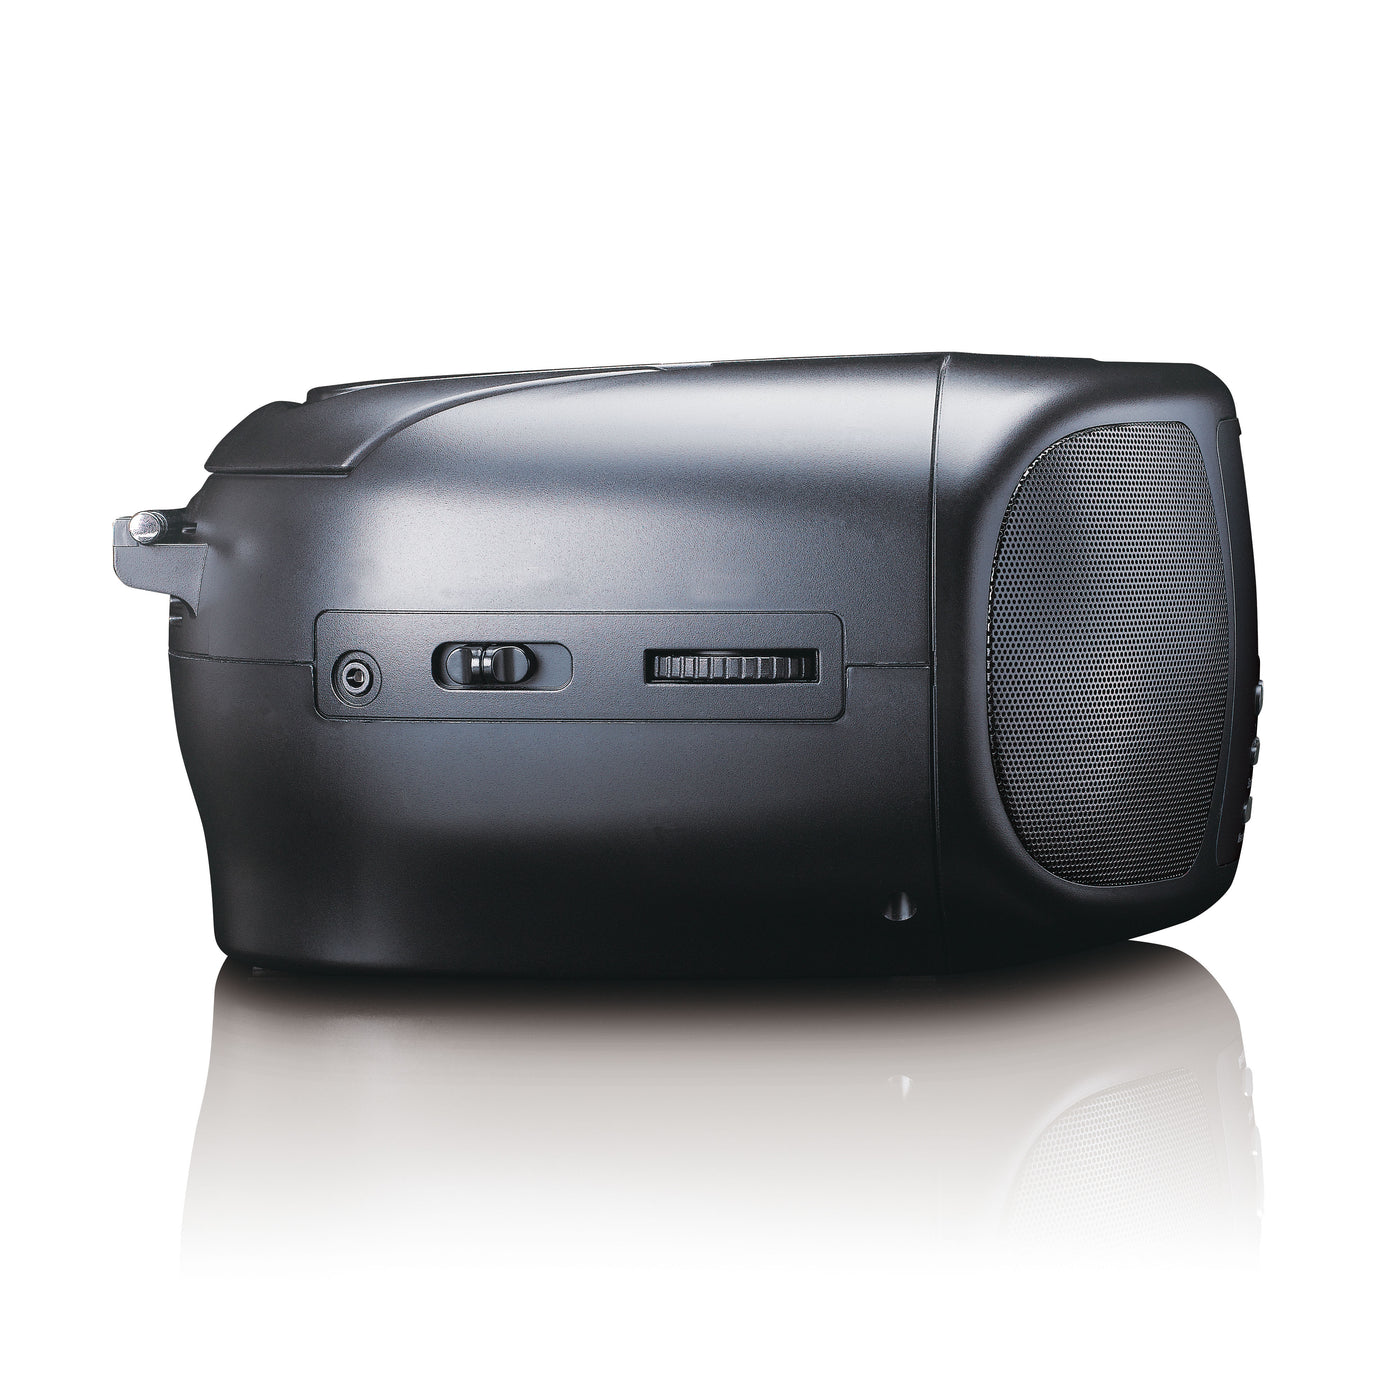 Lenco SCD-6000BK - Radio Internet portable avec DAB+/FM, Bluetooth®, lecteur CD et grand écran LCD couleur - Noir